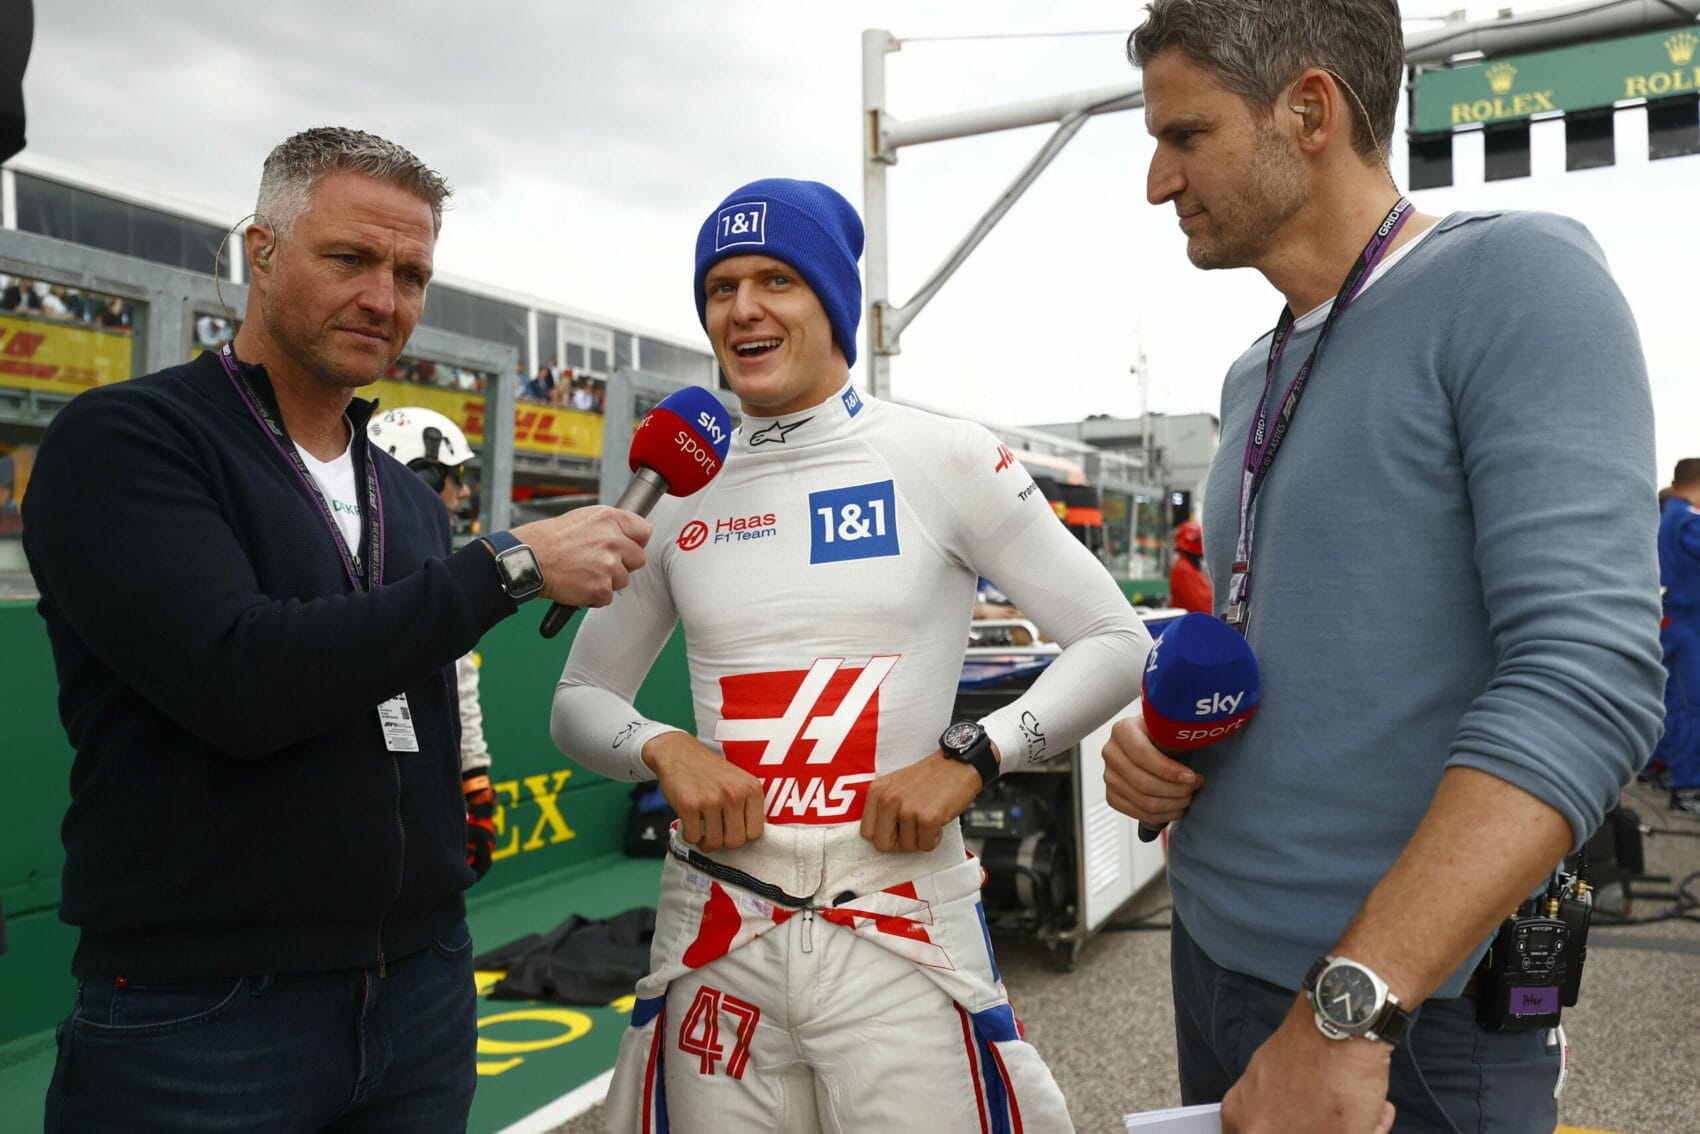 Az unokaöccséért harcoló Ralf Schumacher drasztikus döntést hozott a kritika ellen